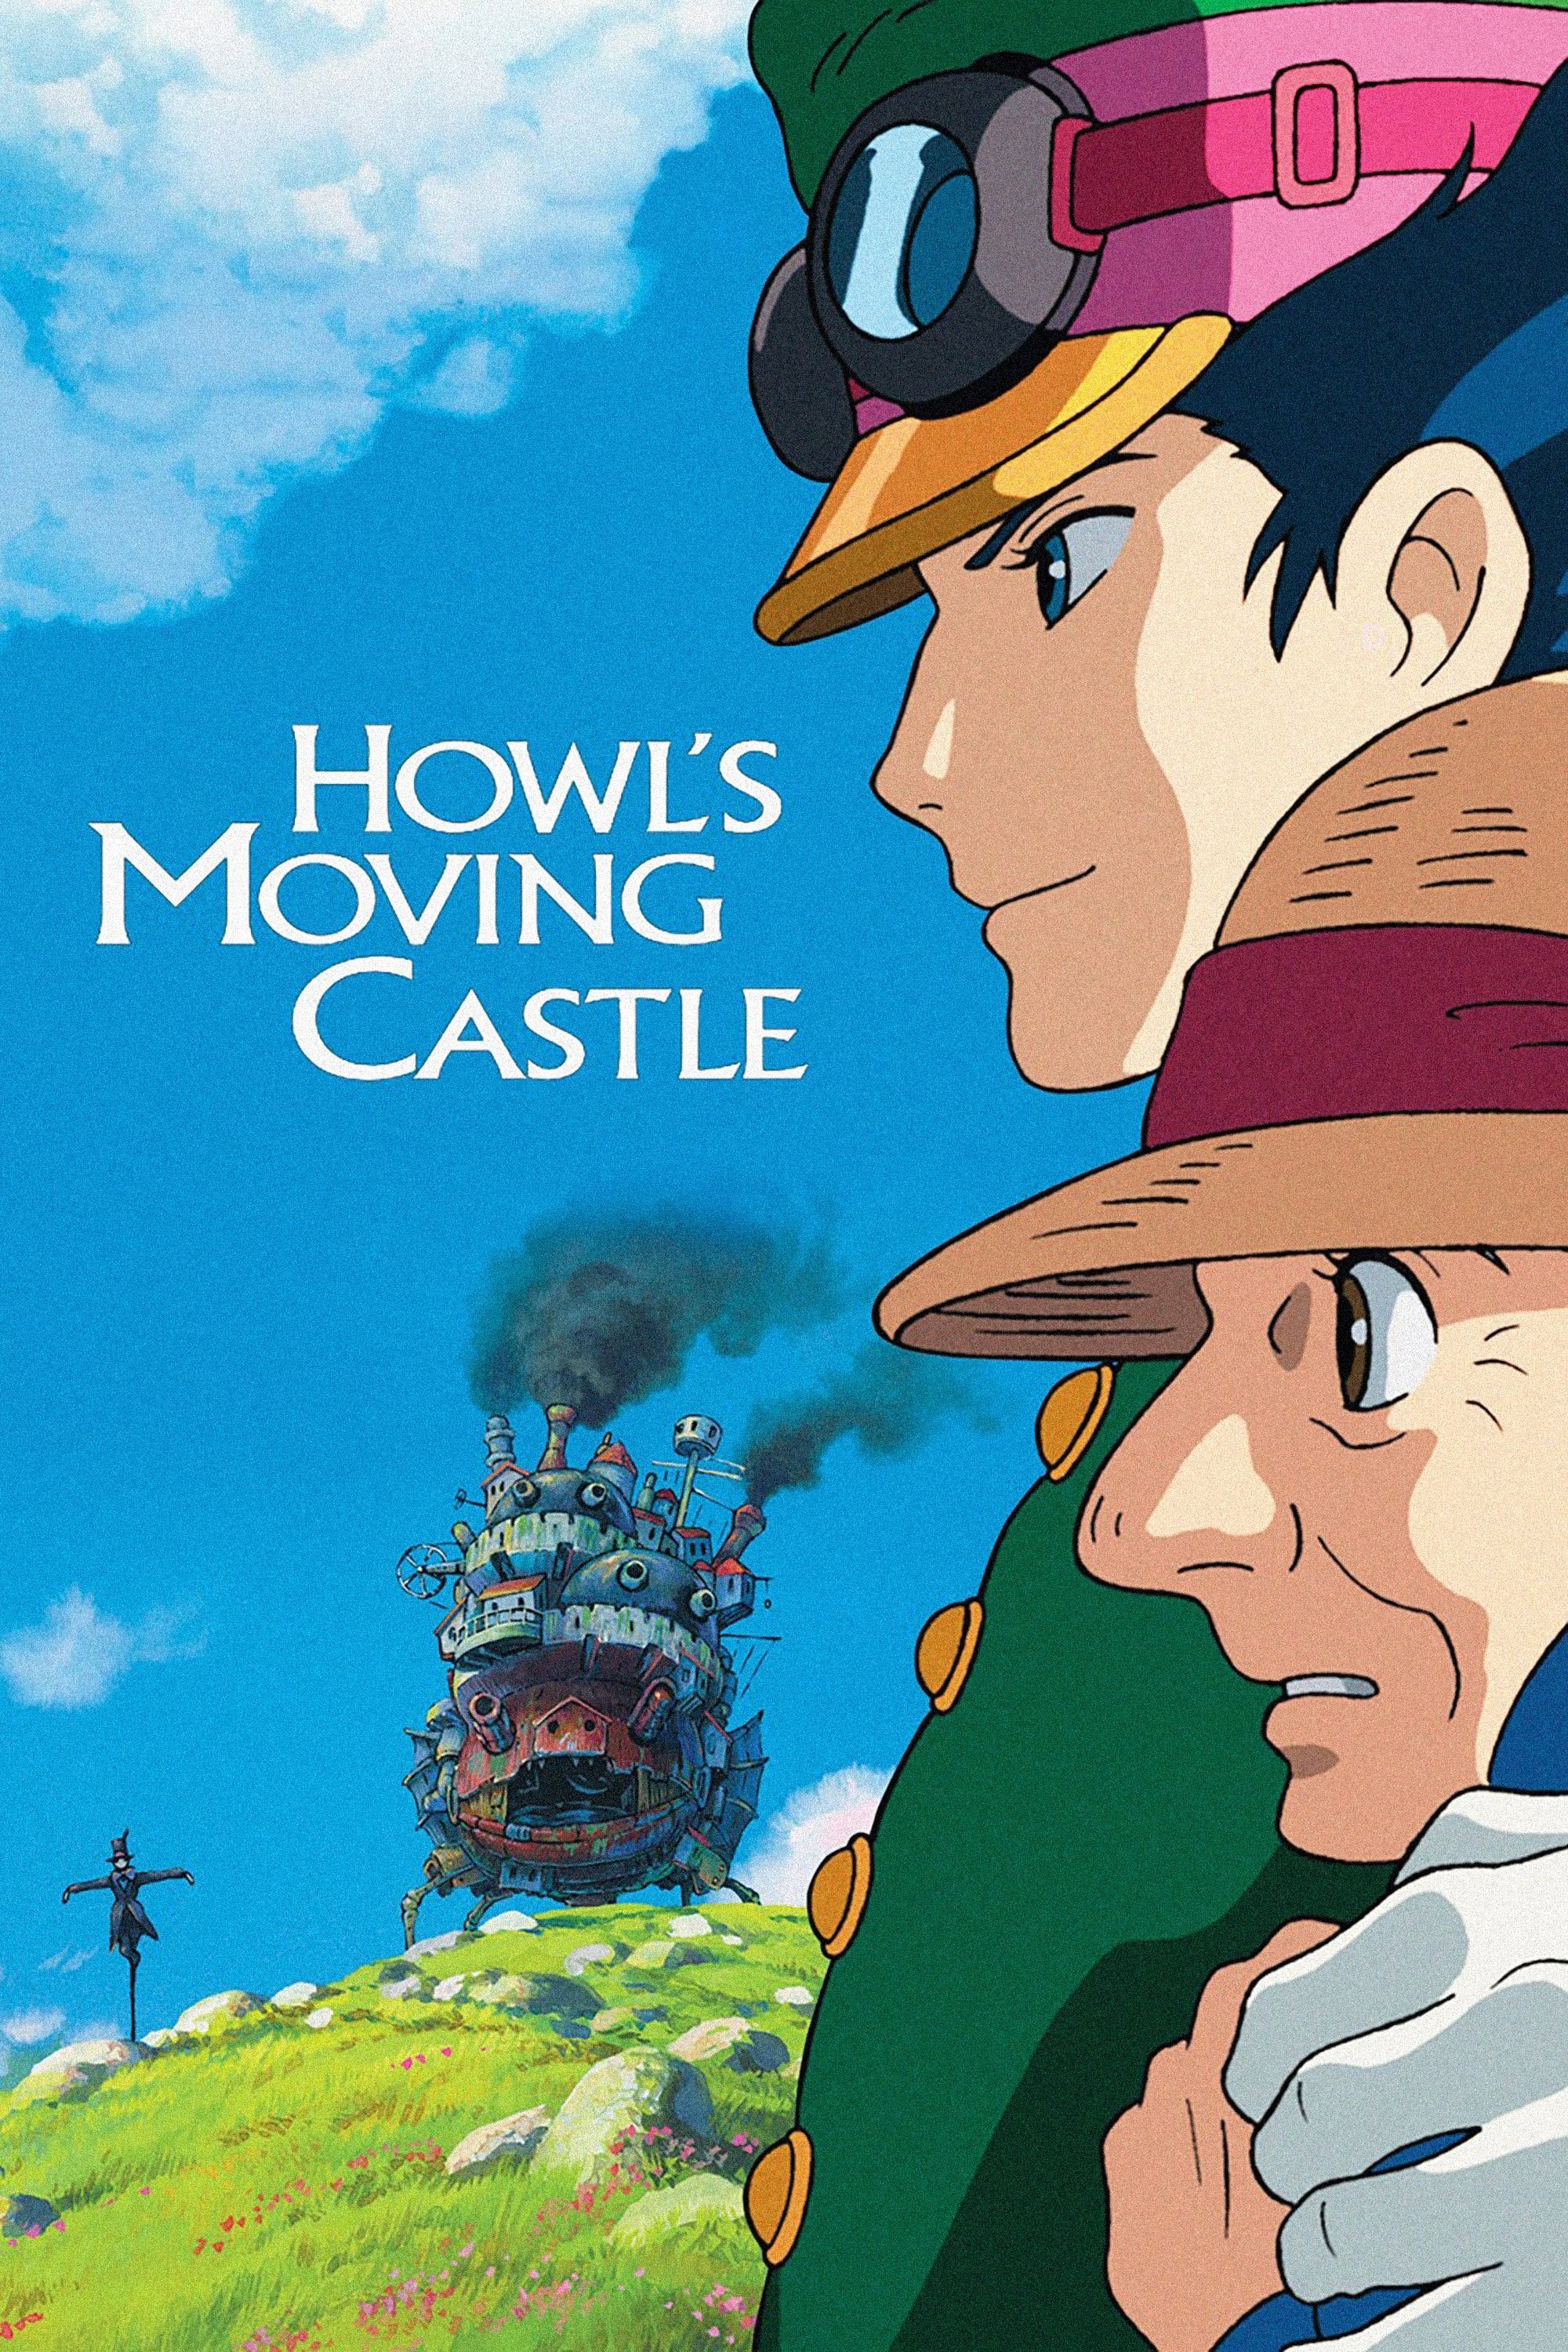 Pôster oficial do filme Howl's Moving Castle, retratando Howl e Sophie, e também seu castelo.